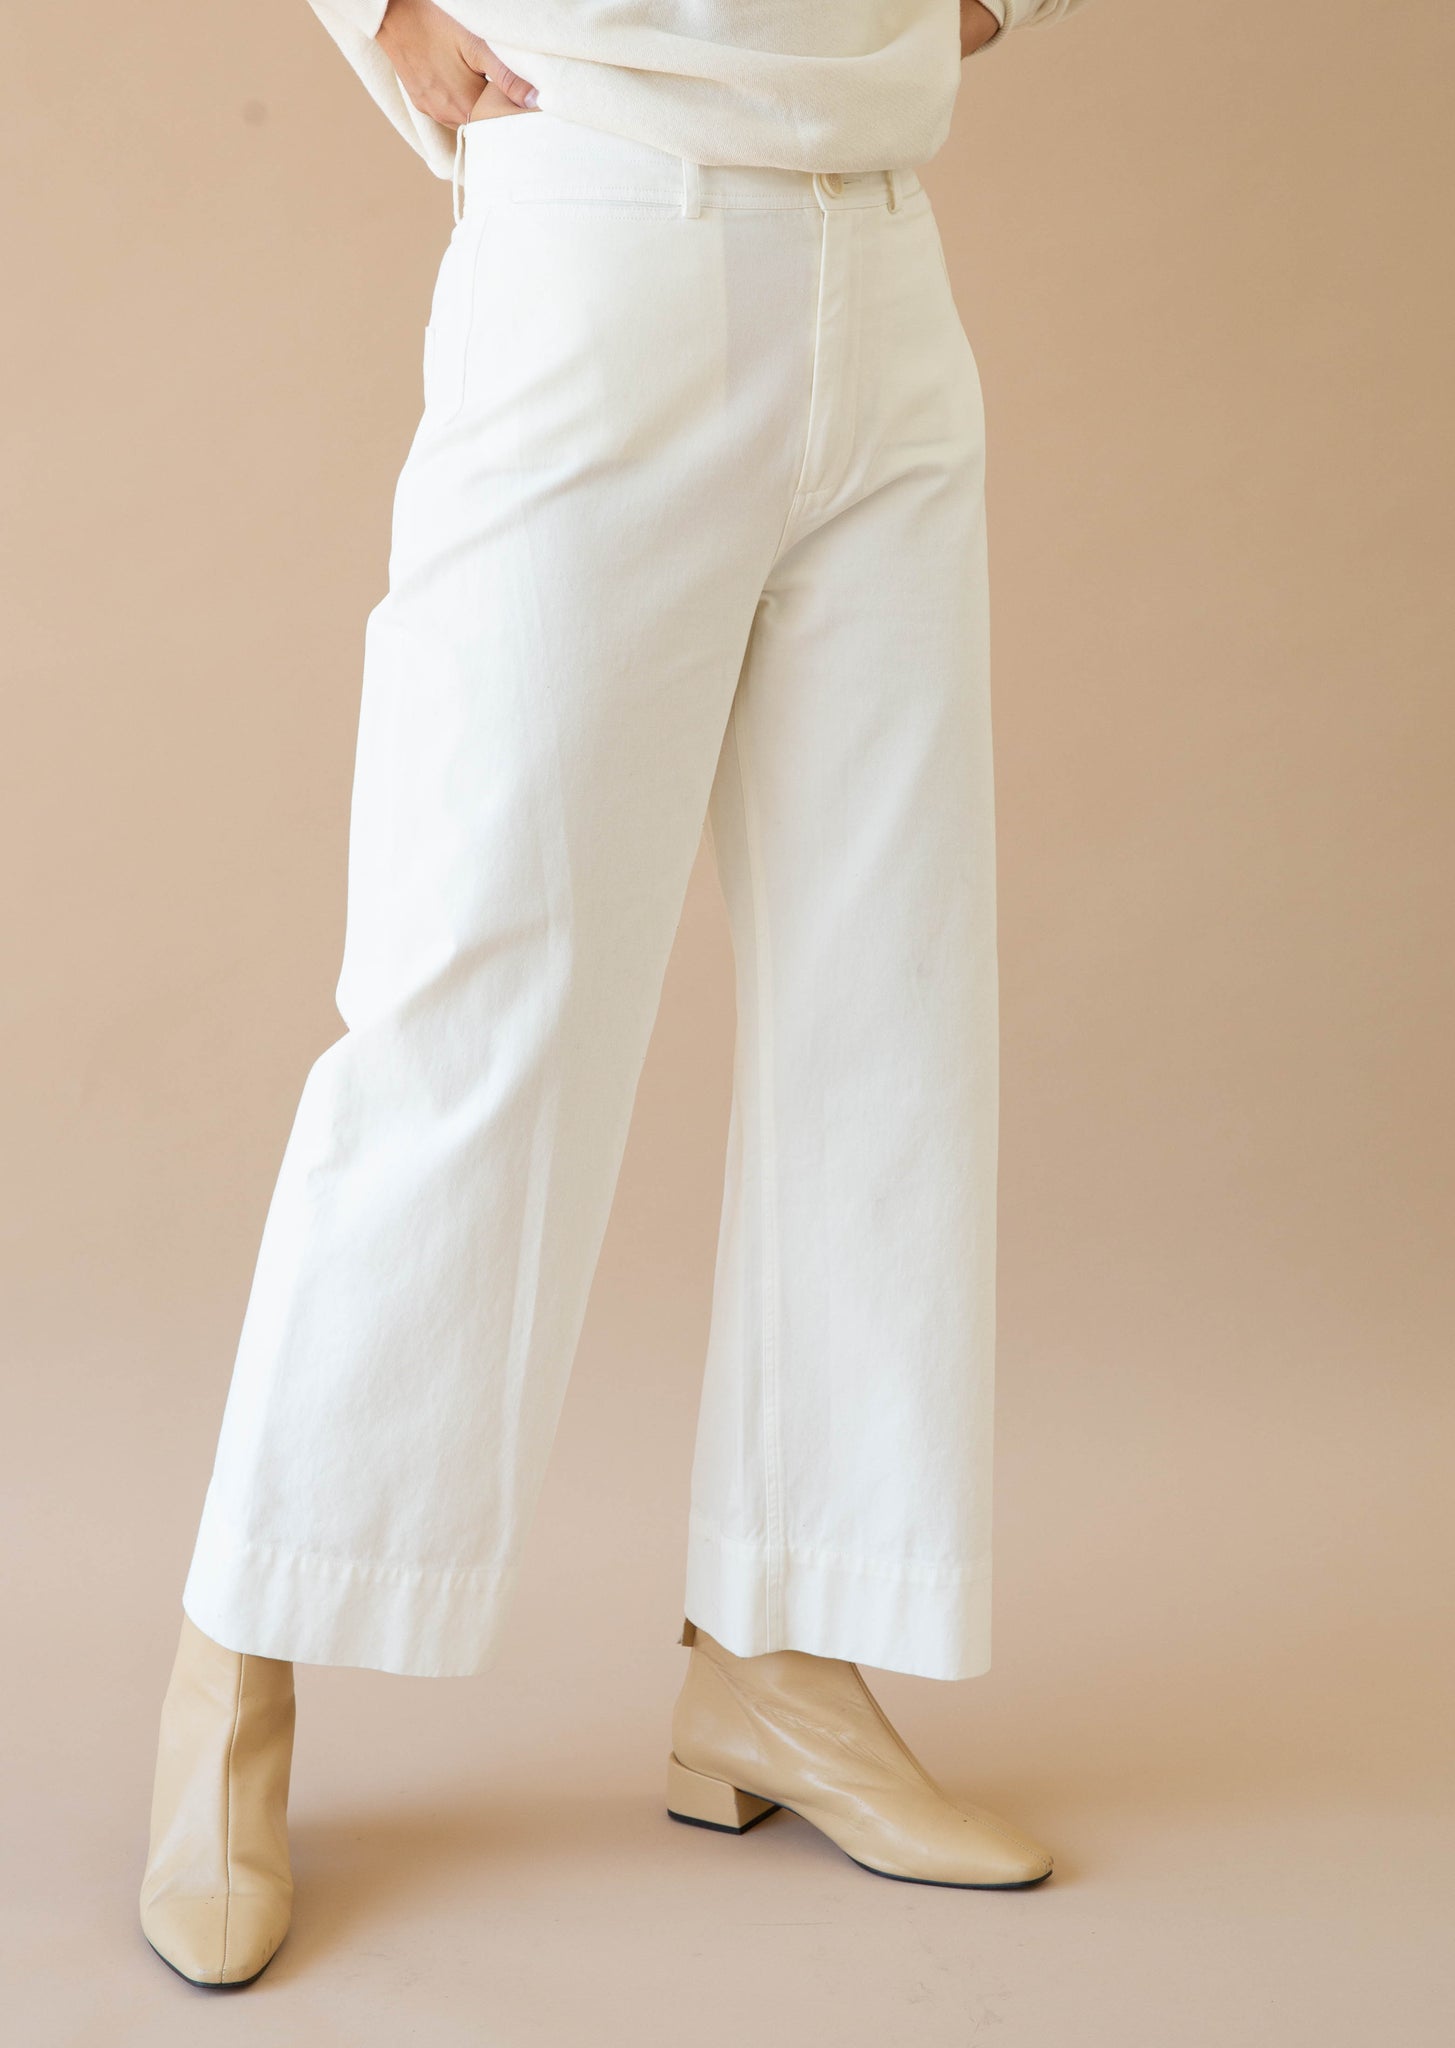 Apiece Apart Classic Merida Pant - Size 6